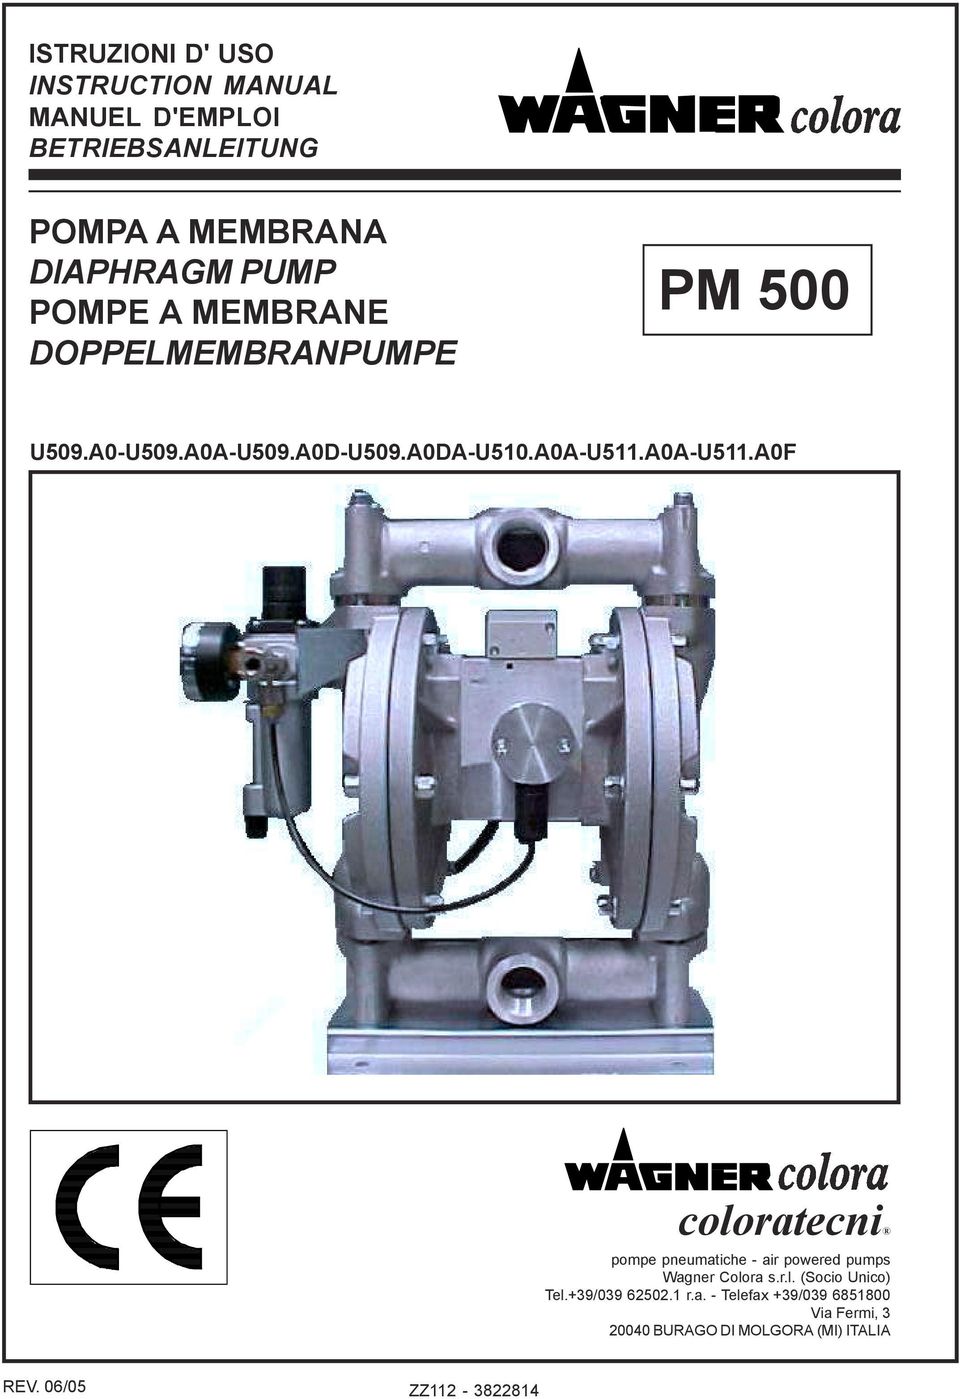 A0A-U511.A0F coloratecni pompe pneumatiche - air powered pumps Wagner Colora s.r.l. (Socio Unico) Tel.